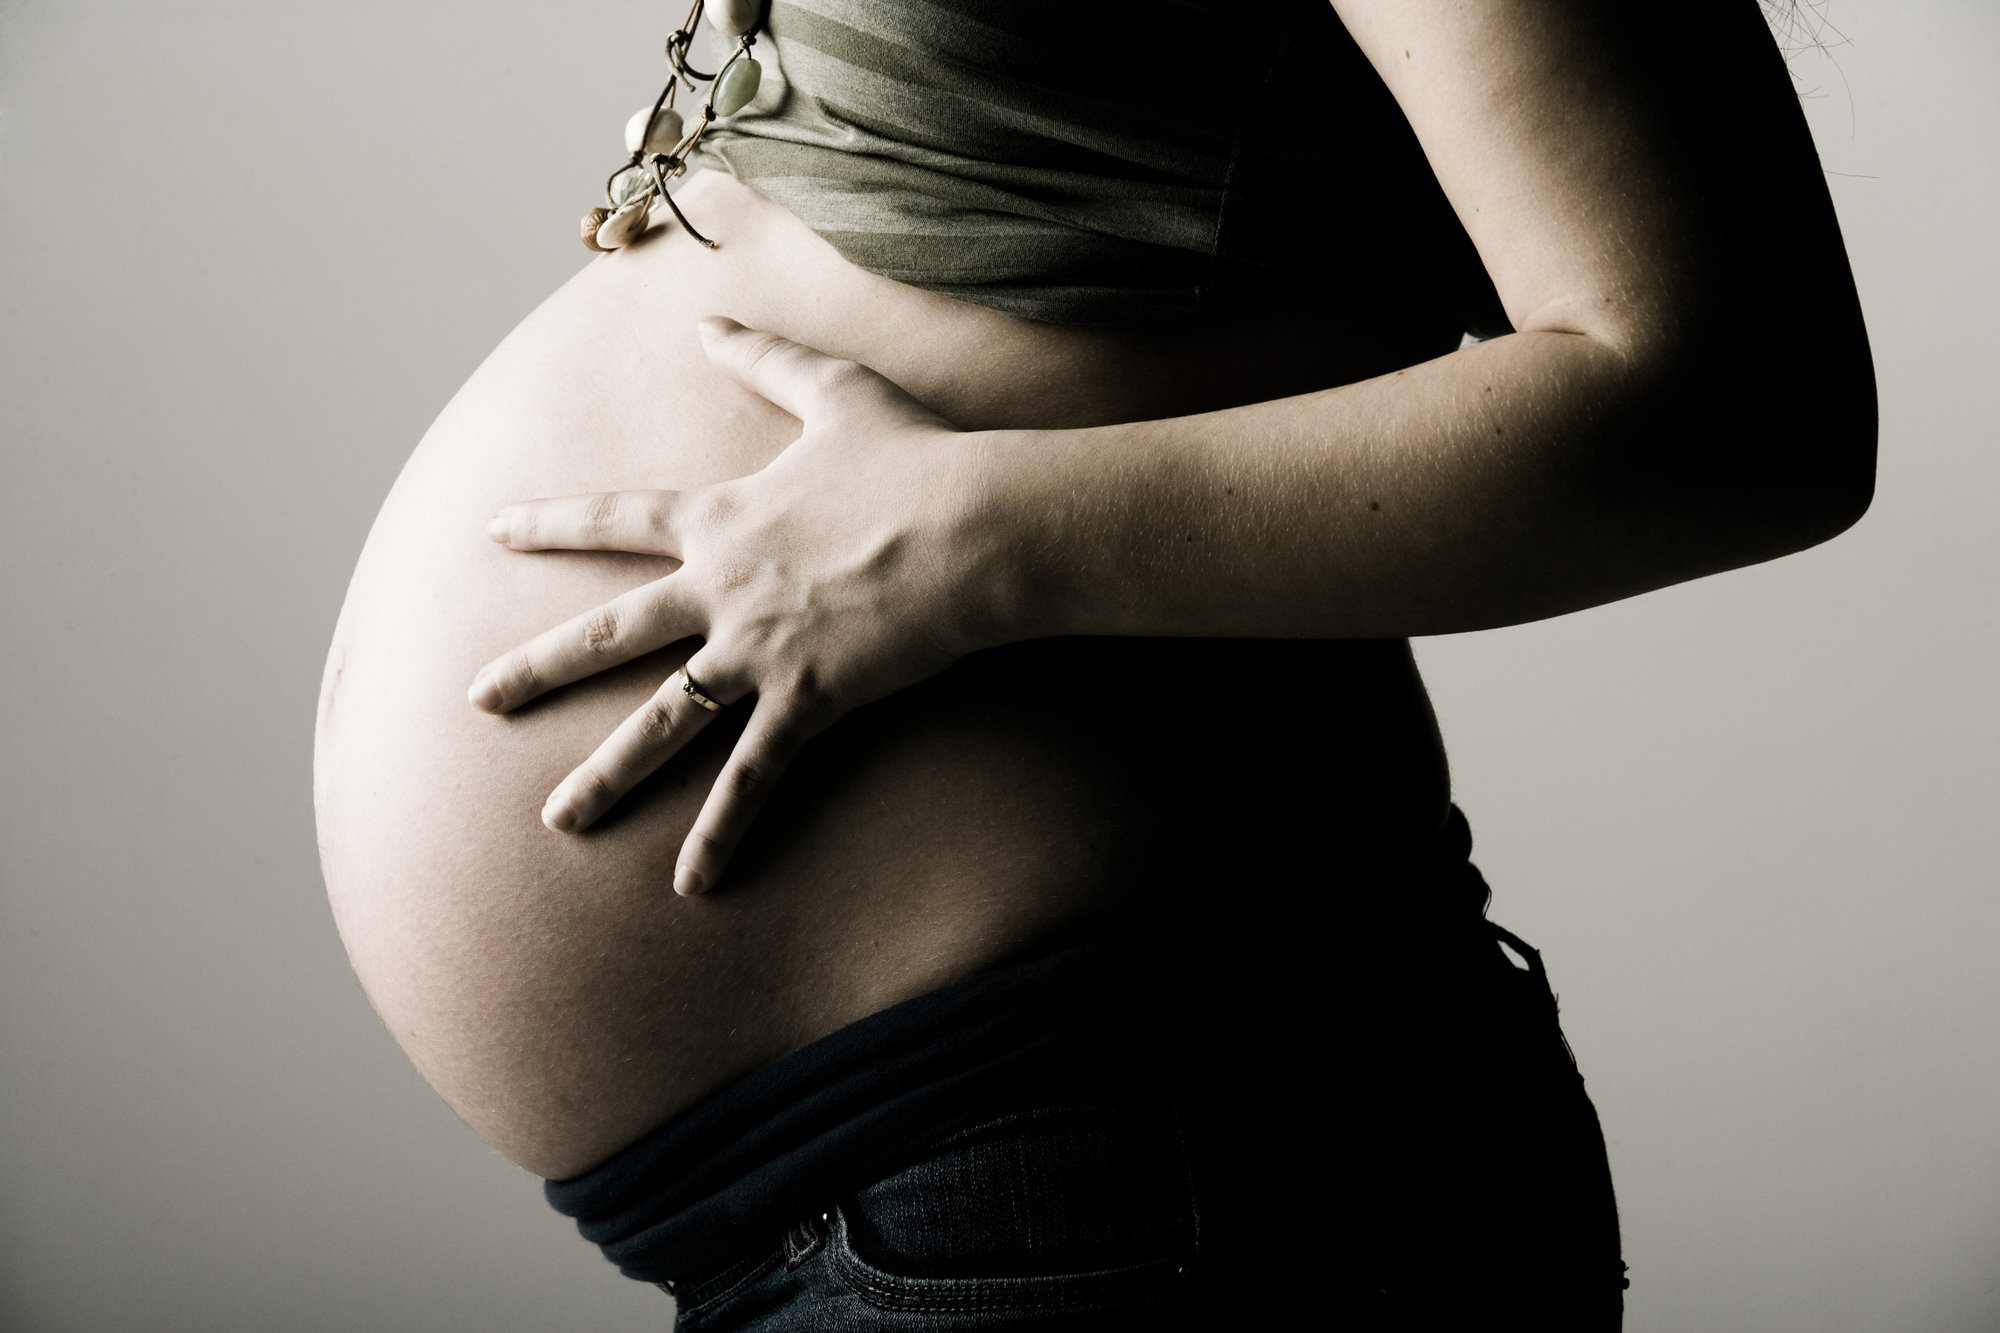 El Terror del embarazo, una manera original de anunciar que vamos a tener un hijo